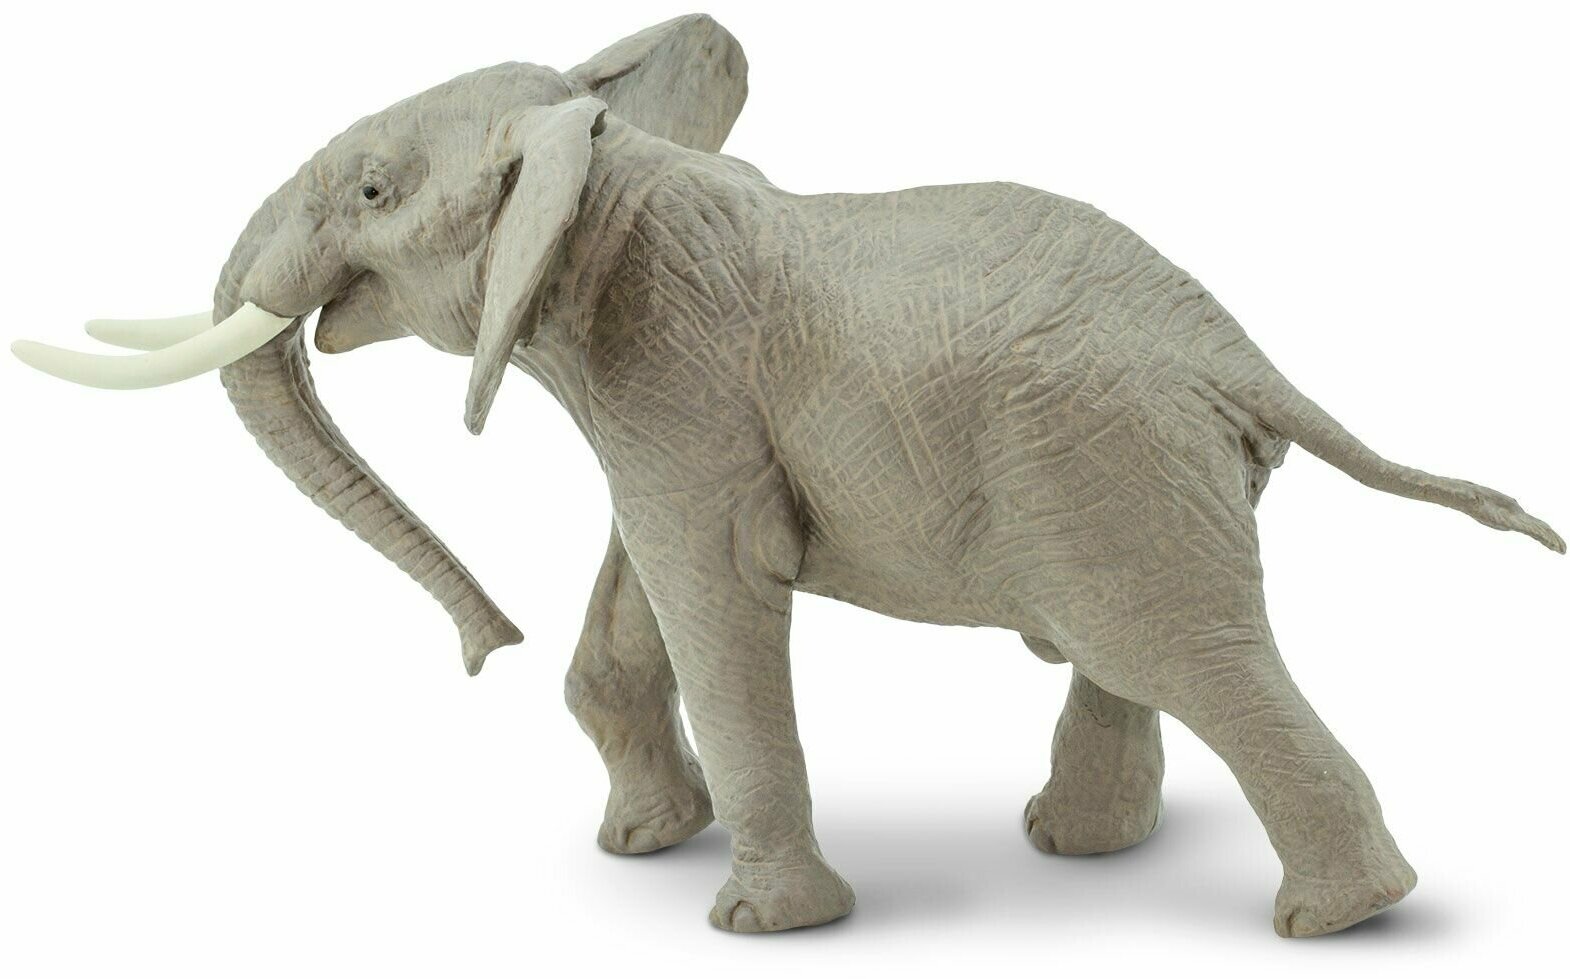 Фигурка животного Safari Ltd Африканский слон, для детей, игрушка коллекционная, 295629